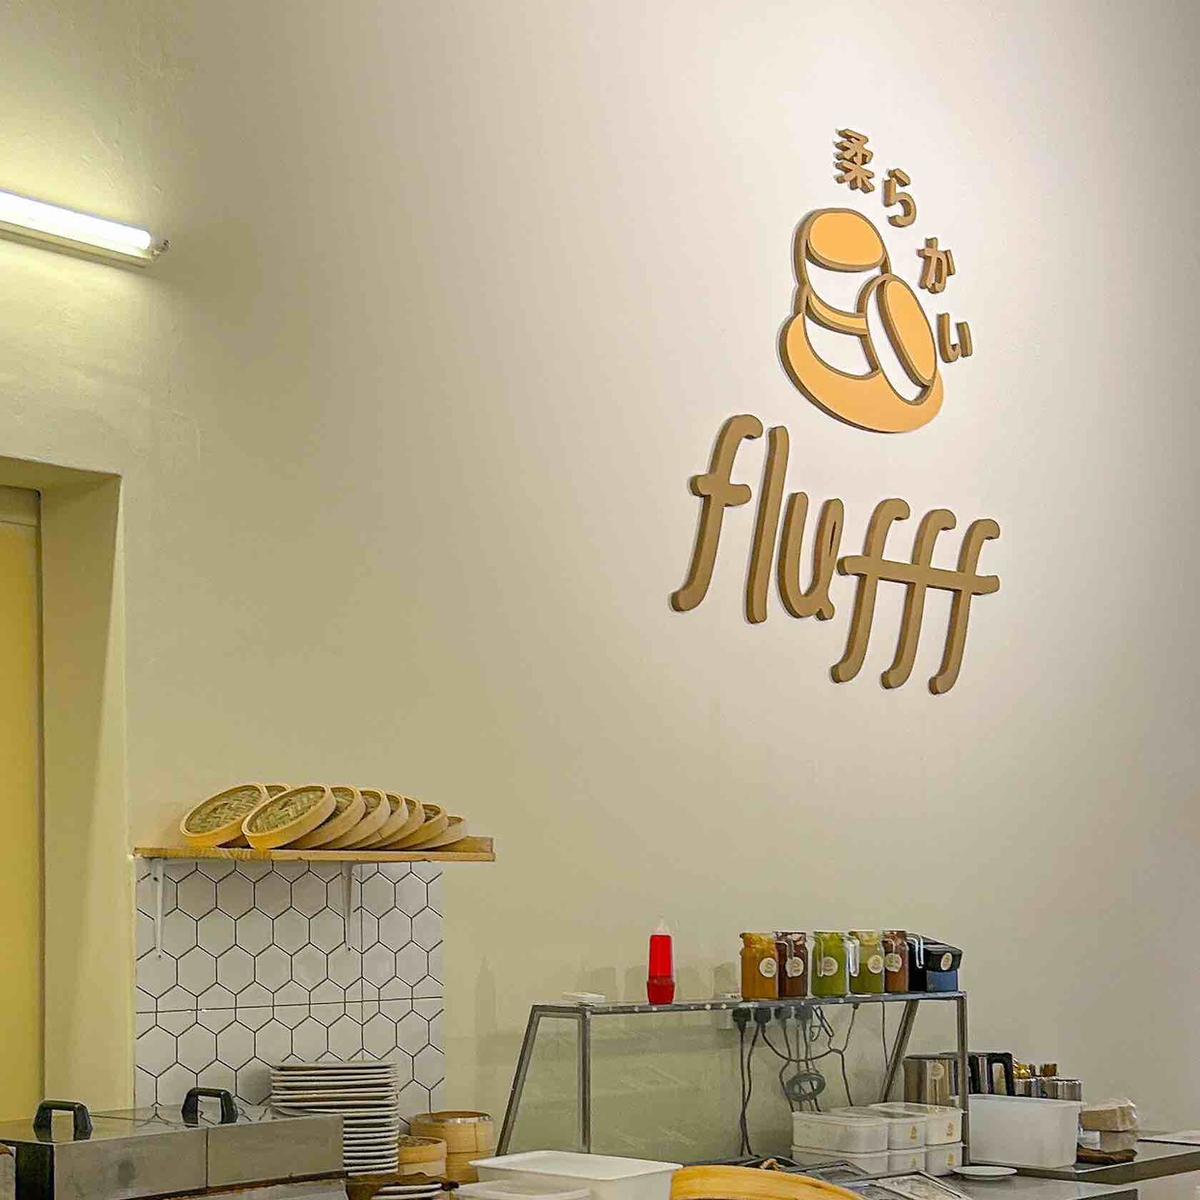 Flufff Cafe